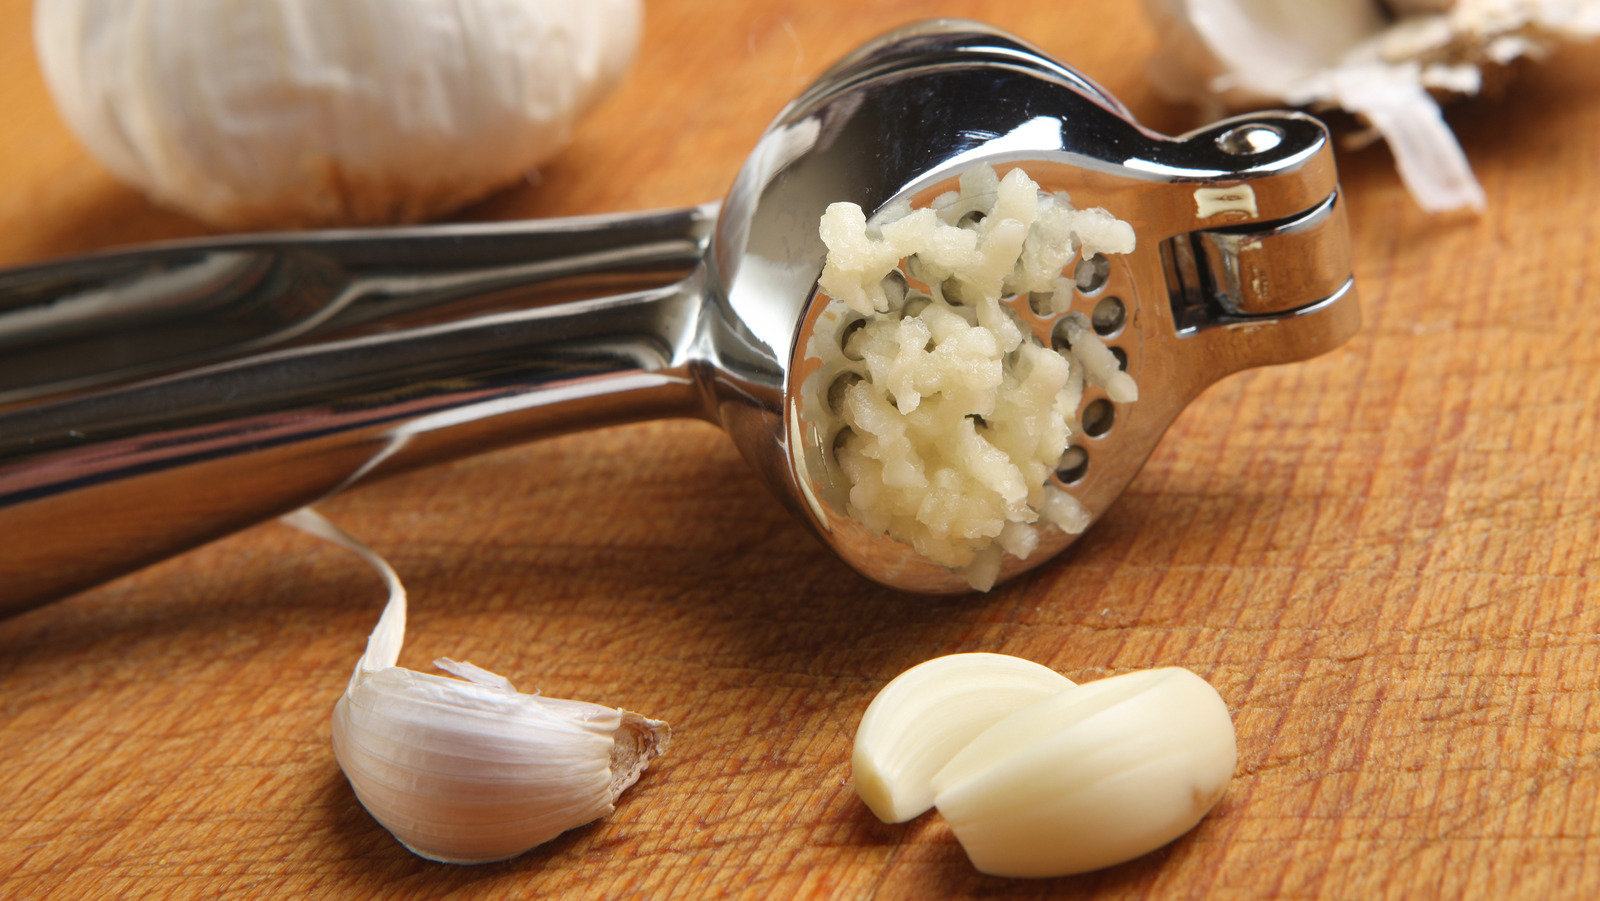 Do I Need a Garlic Press?